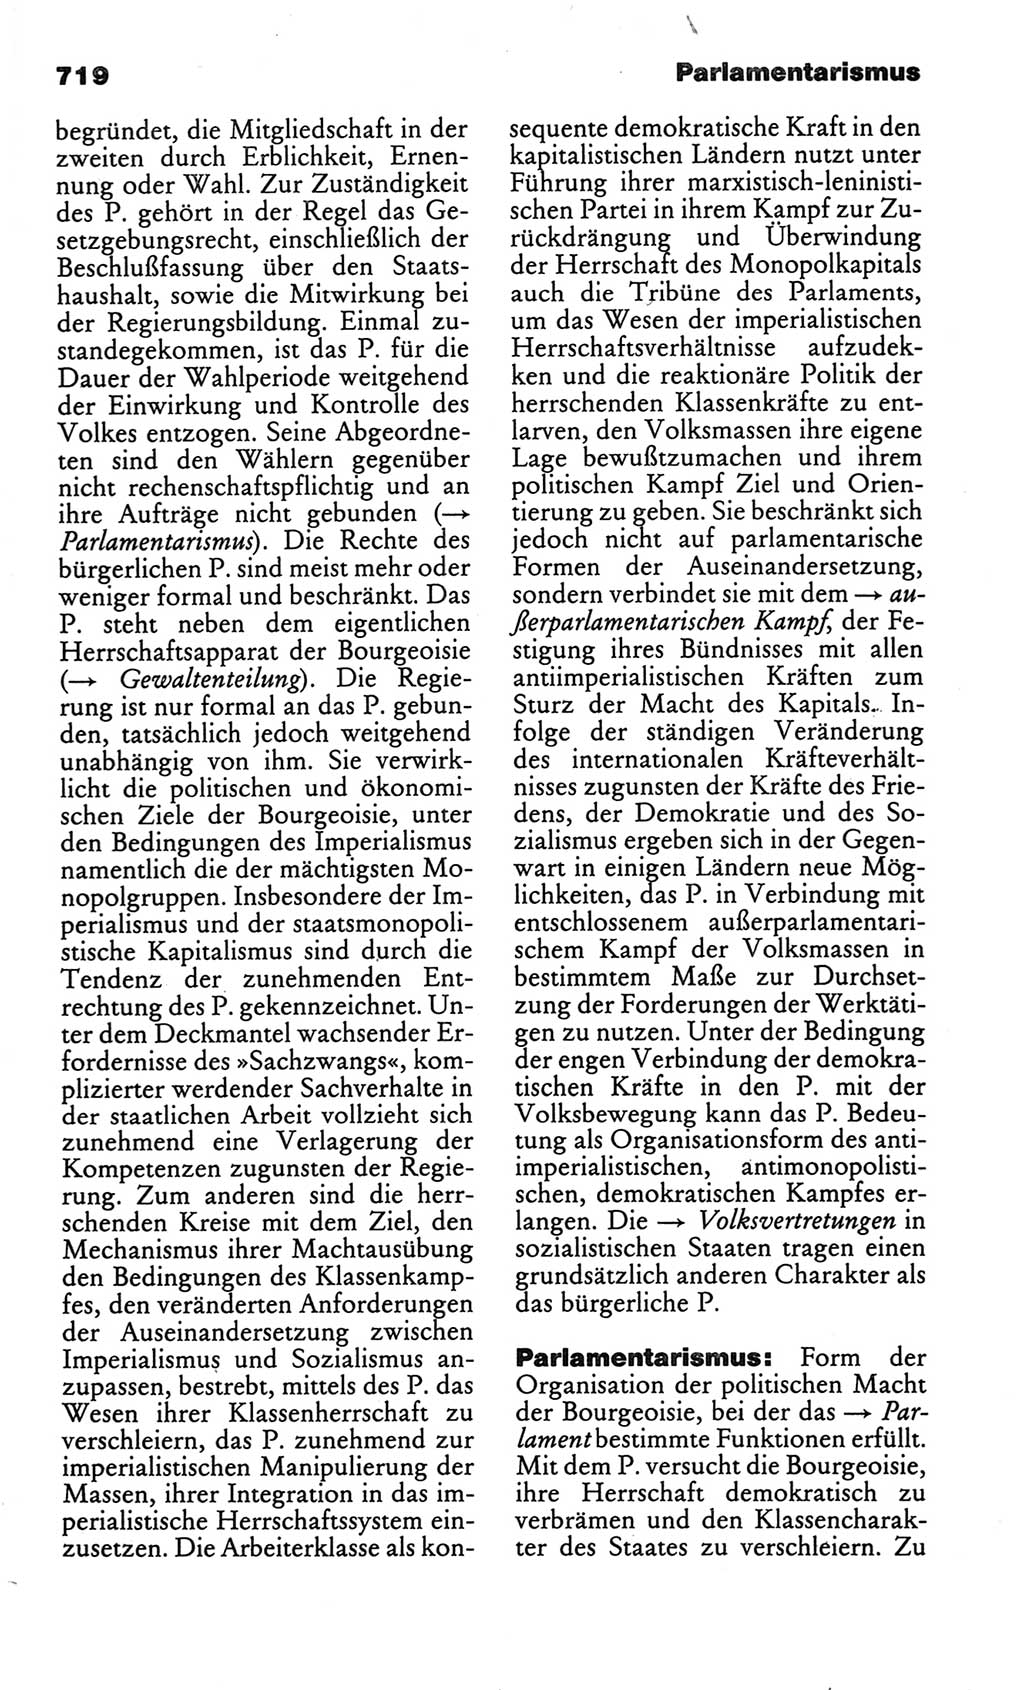 Kleines politisches Wörterbuch [Deutsche Demokratische Republik (DDR)] 1986, Seite 719 (Kl. pol. Wb. DDR 1986, S. 719)